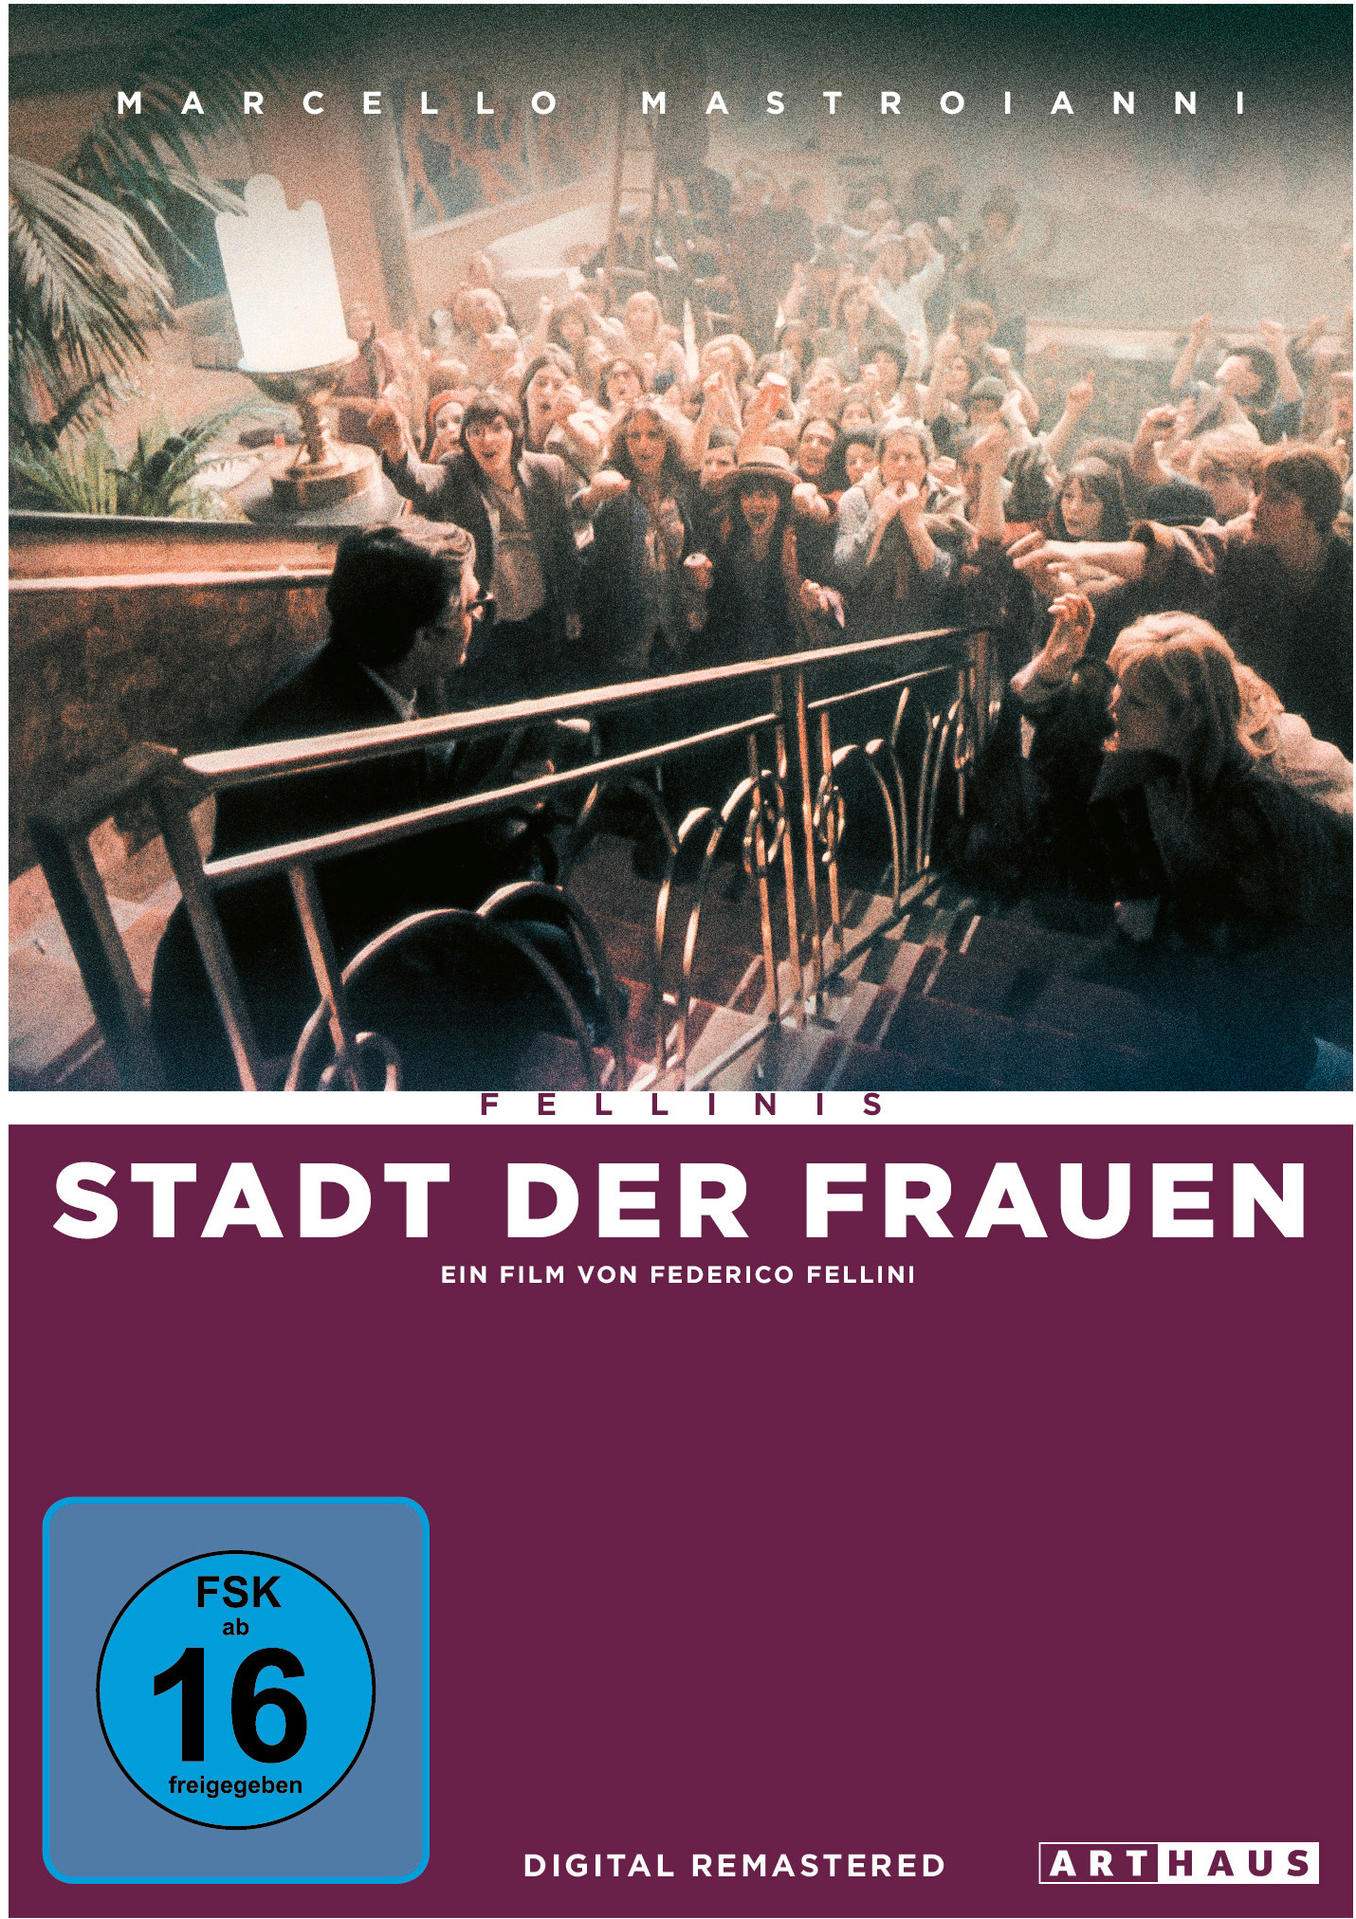 Fellinis Stadt DVD der Frauen